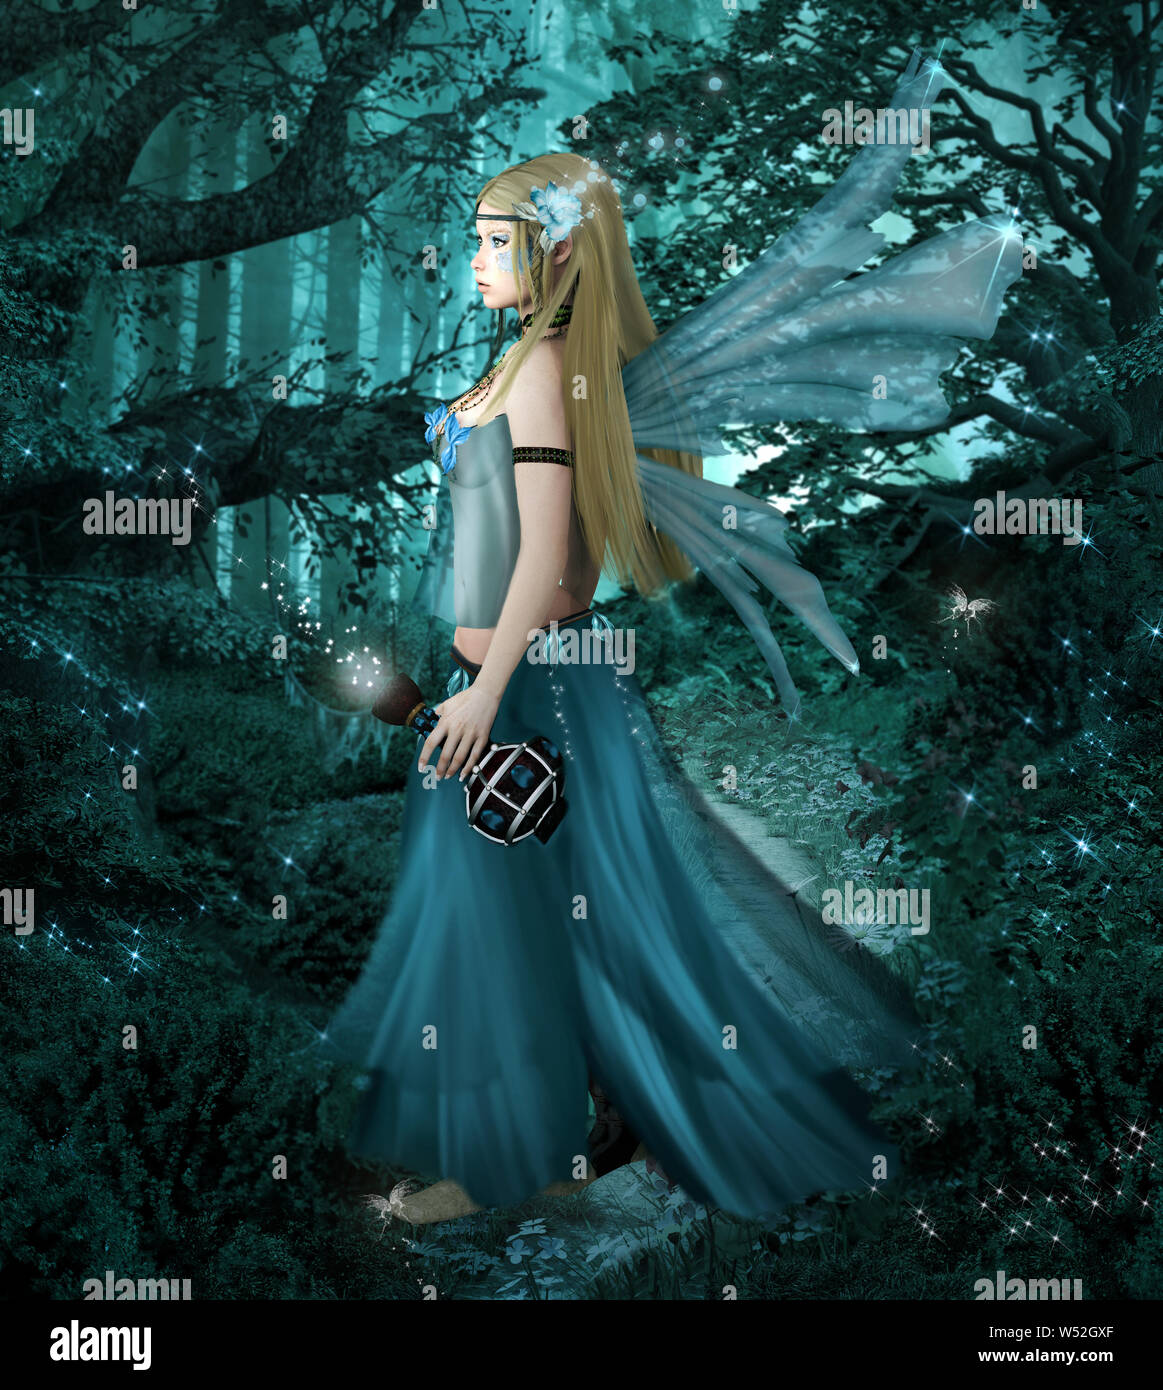 Fata blu con una magica pozione d'amore nella foresta di nebbia - 3D illustrazione Foto Stock